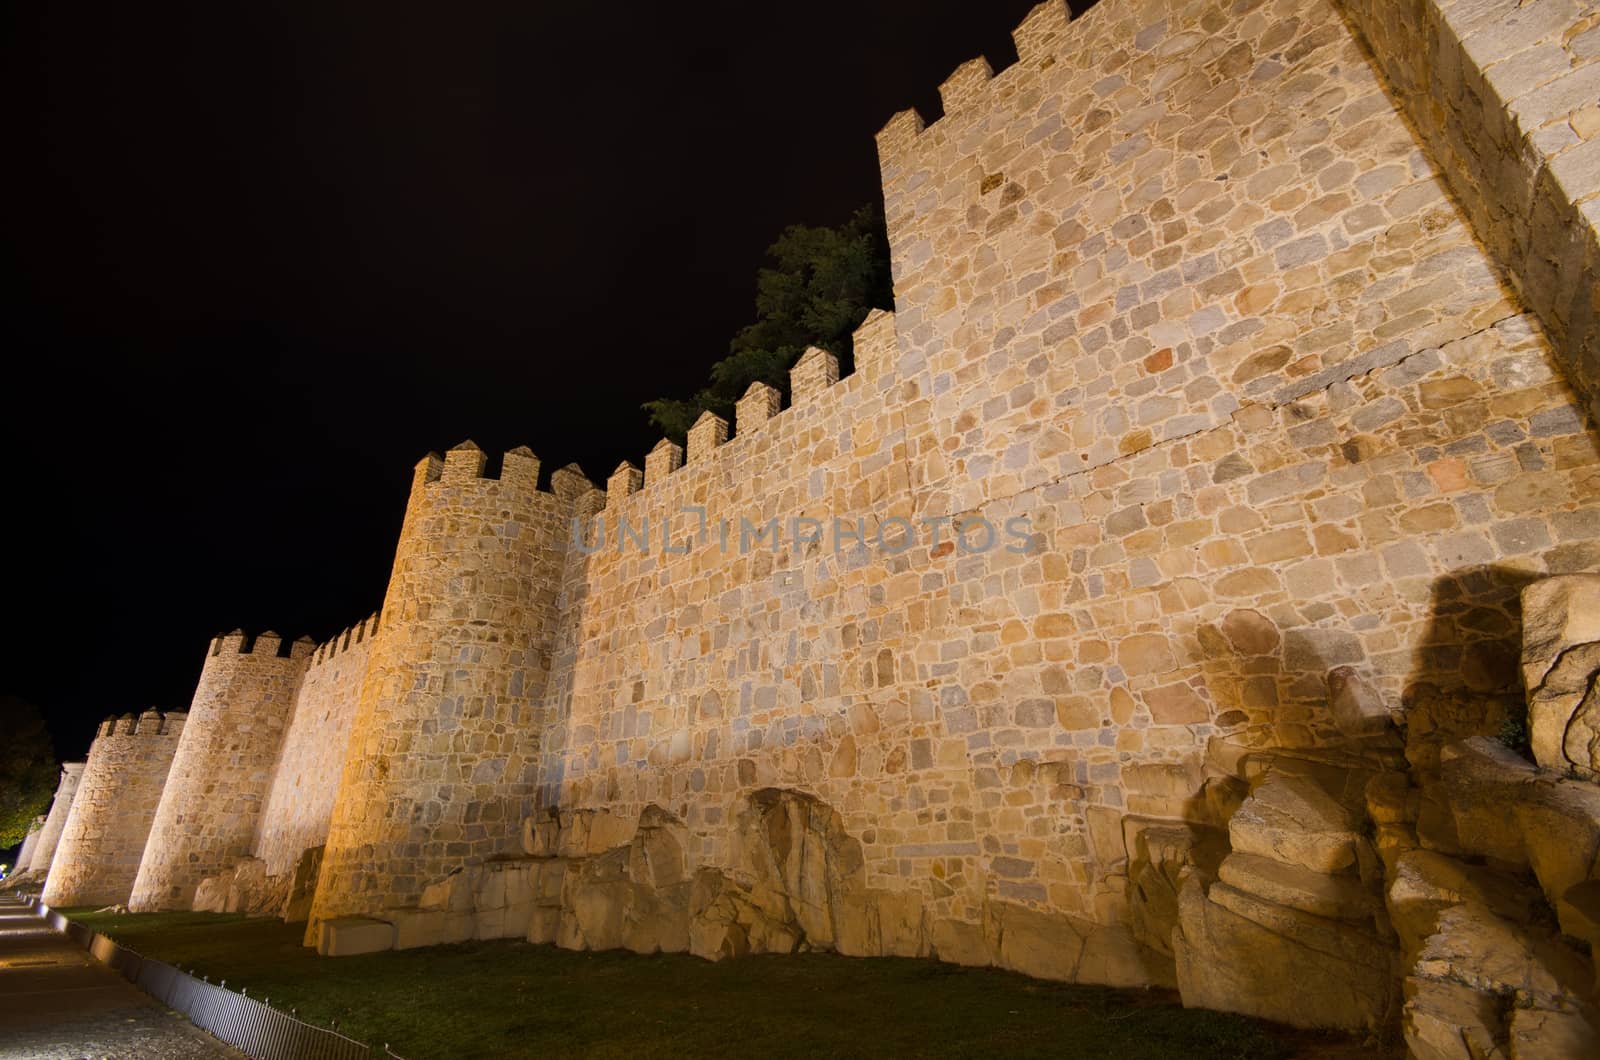 Night scene of famous Avila city walls in Castilla y Leon, Spain by HERRAEZ